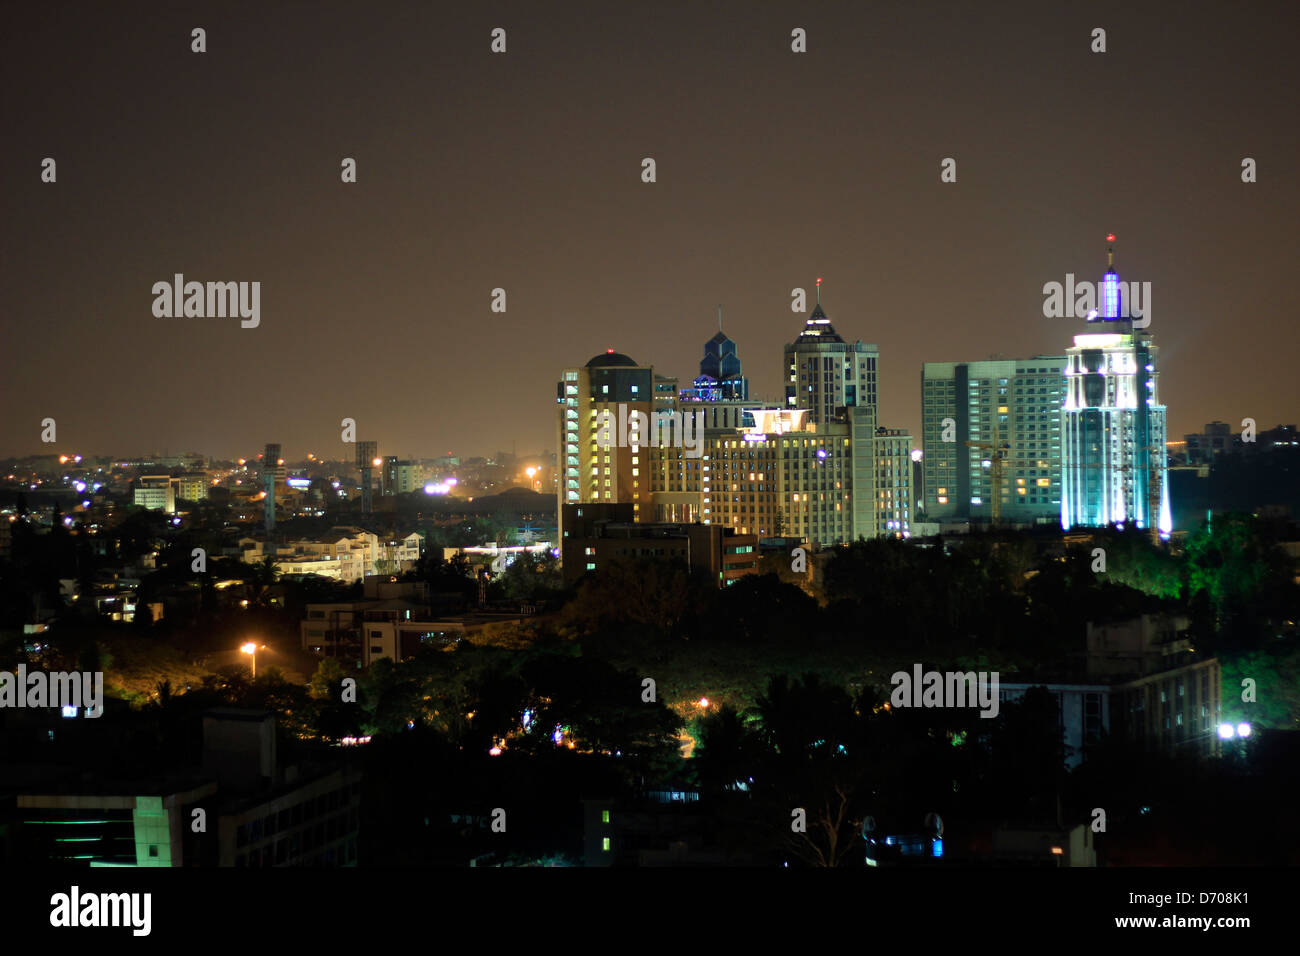 Bangalore city at night Stock Photo - Alamy